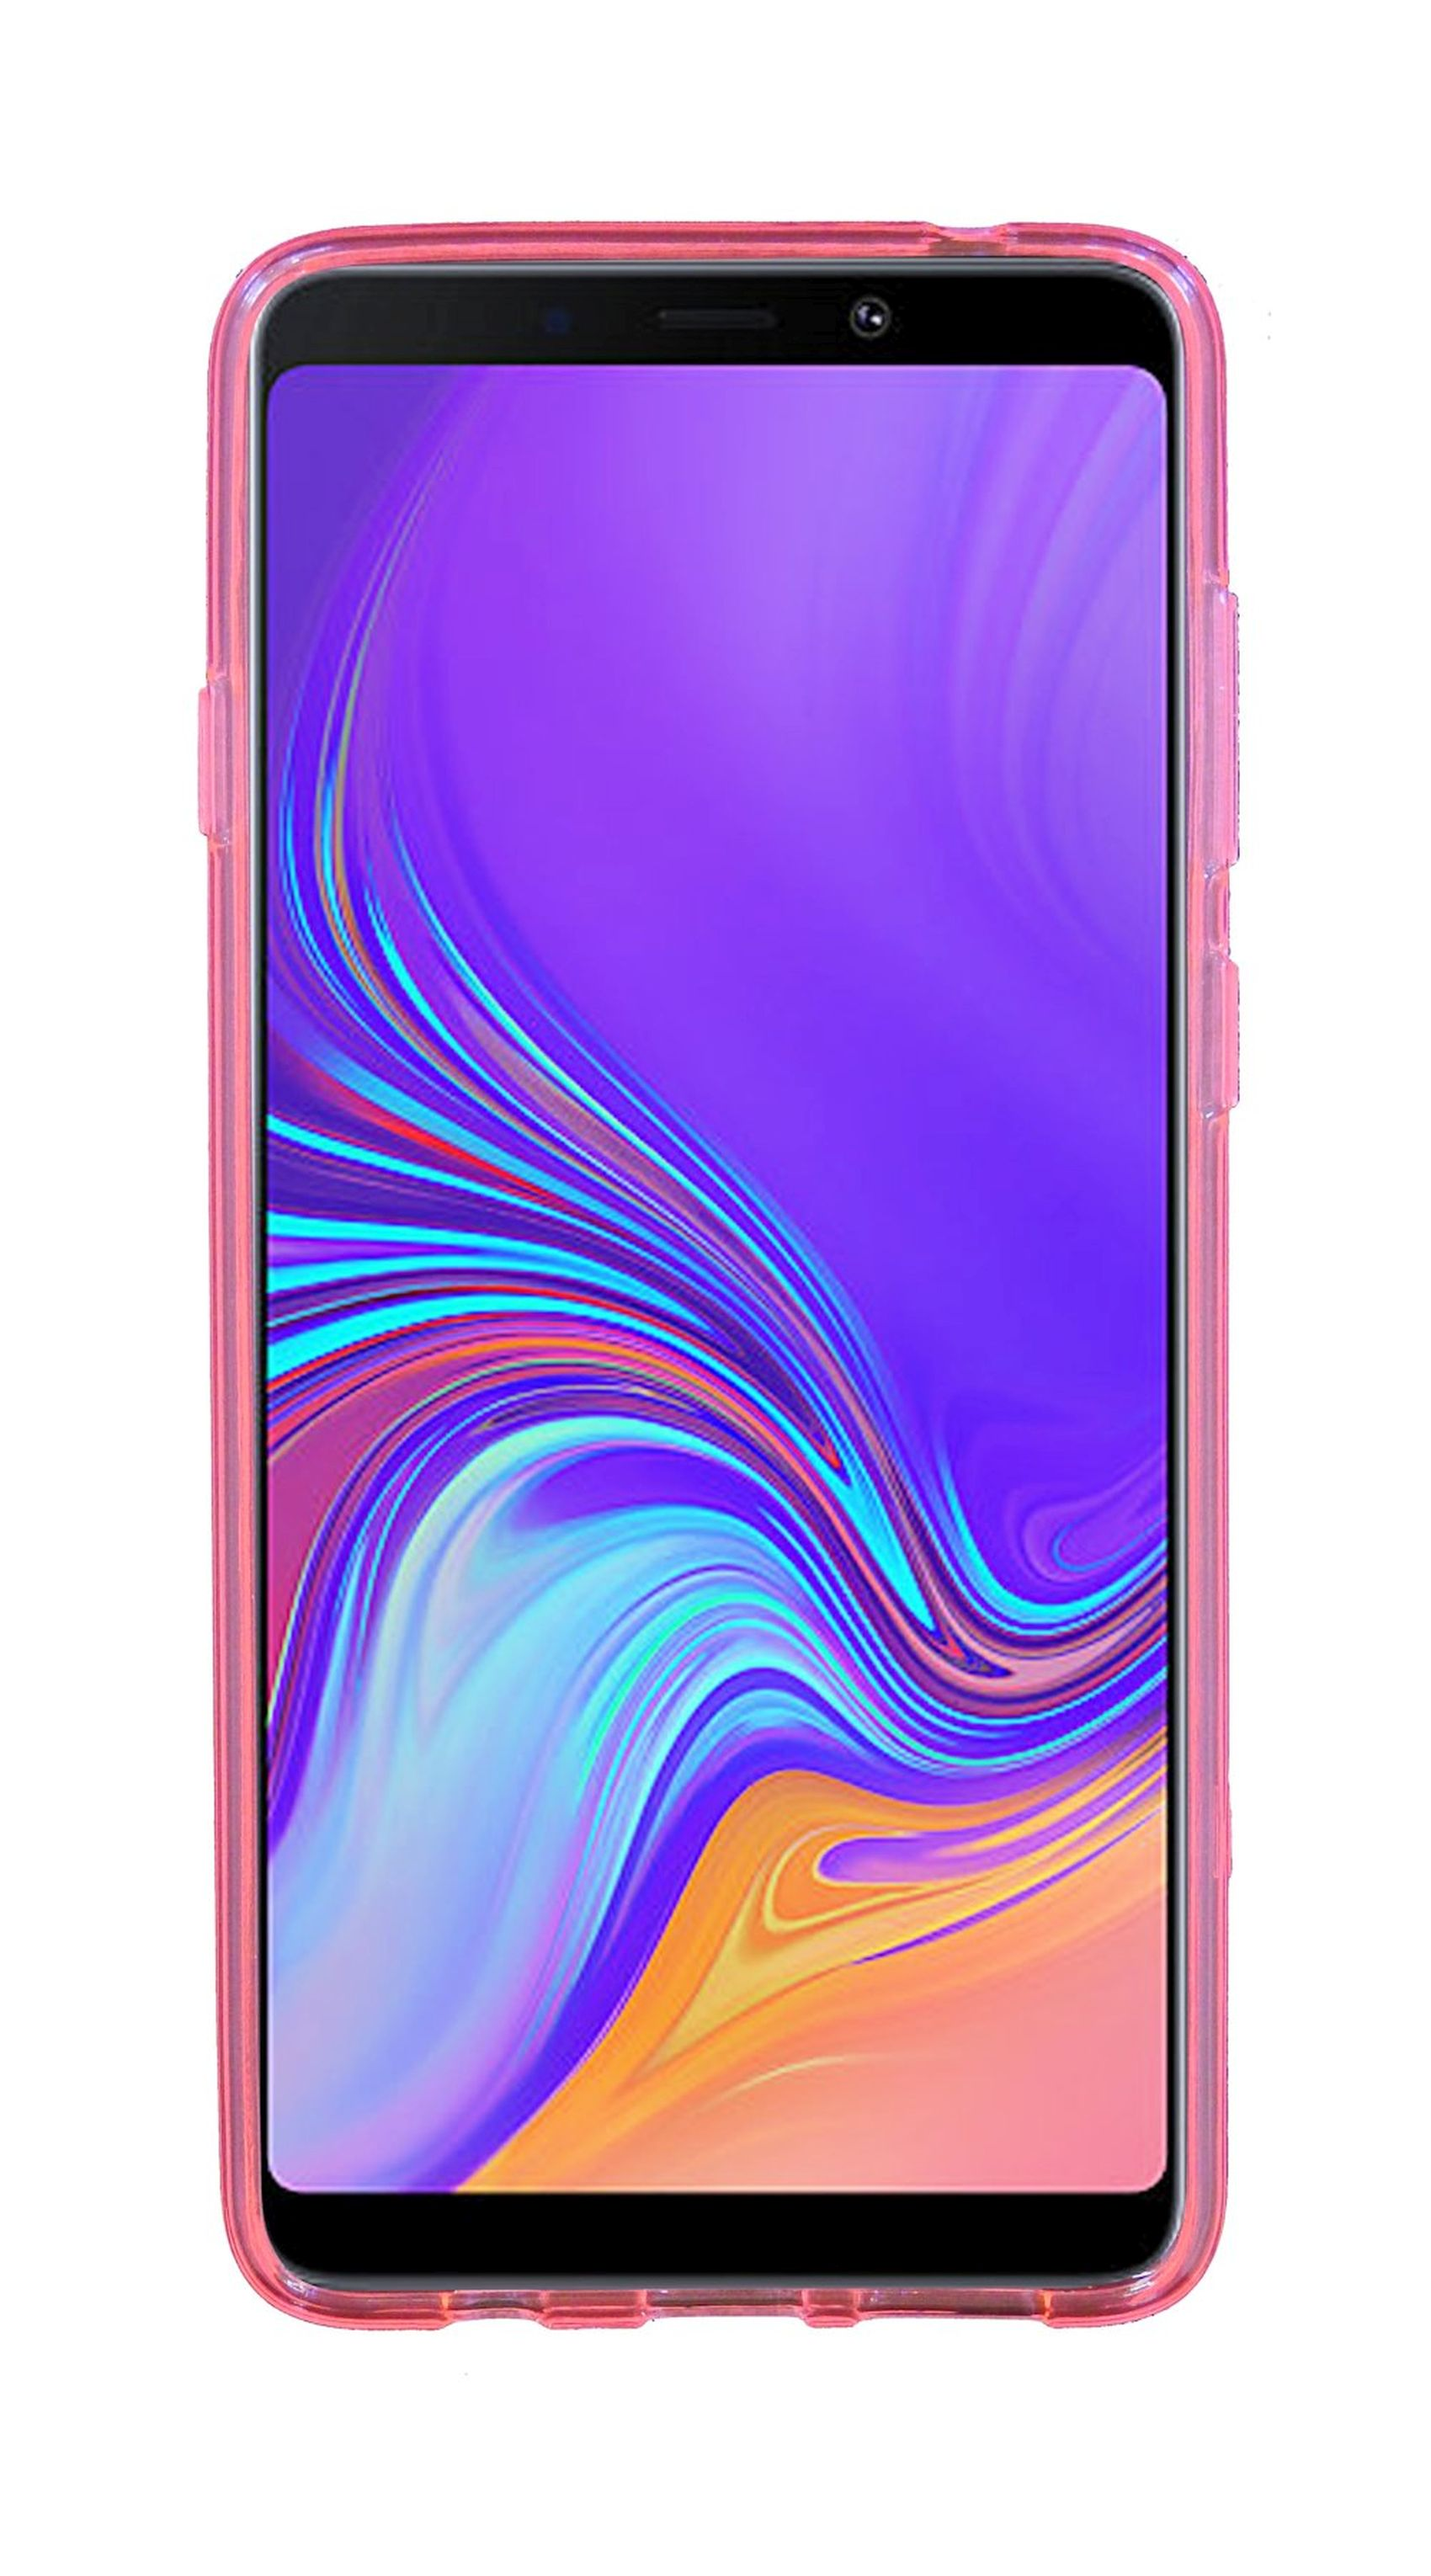 Cover, Samsung, A9 Galaxy S-Line COFI Rosa Bumper, 2018,